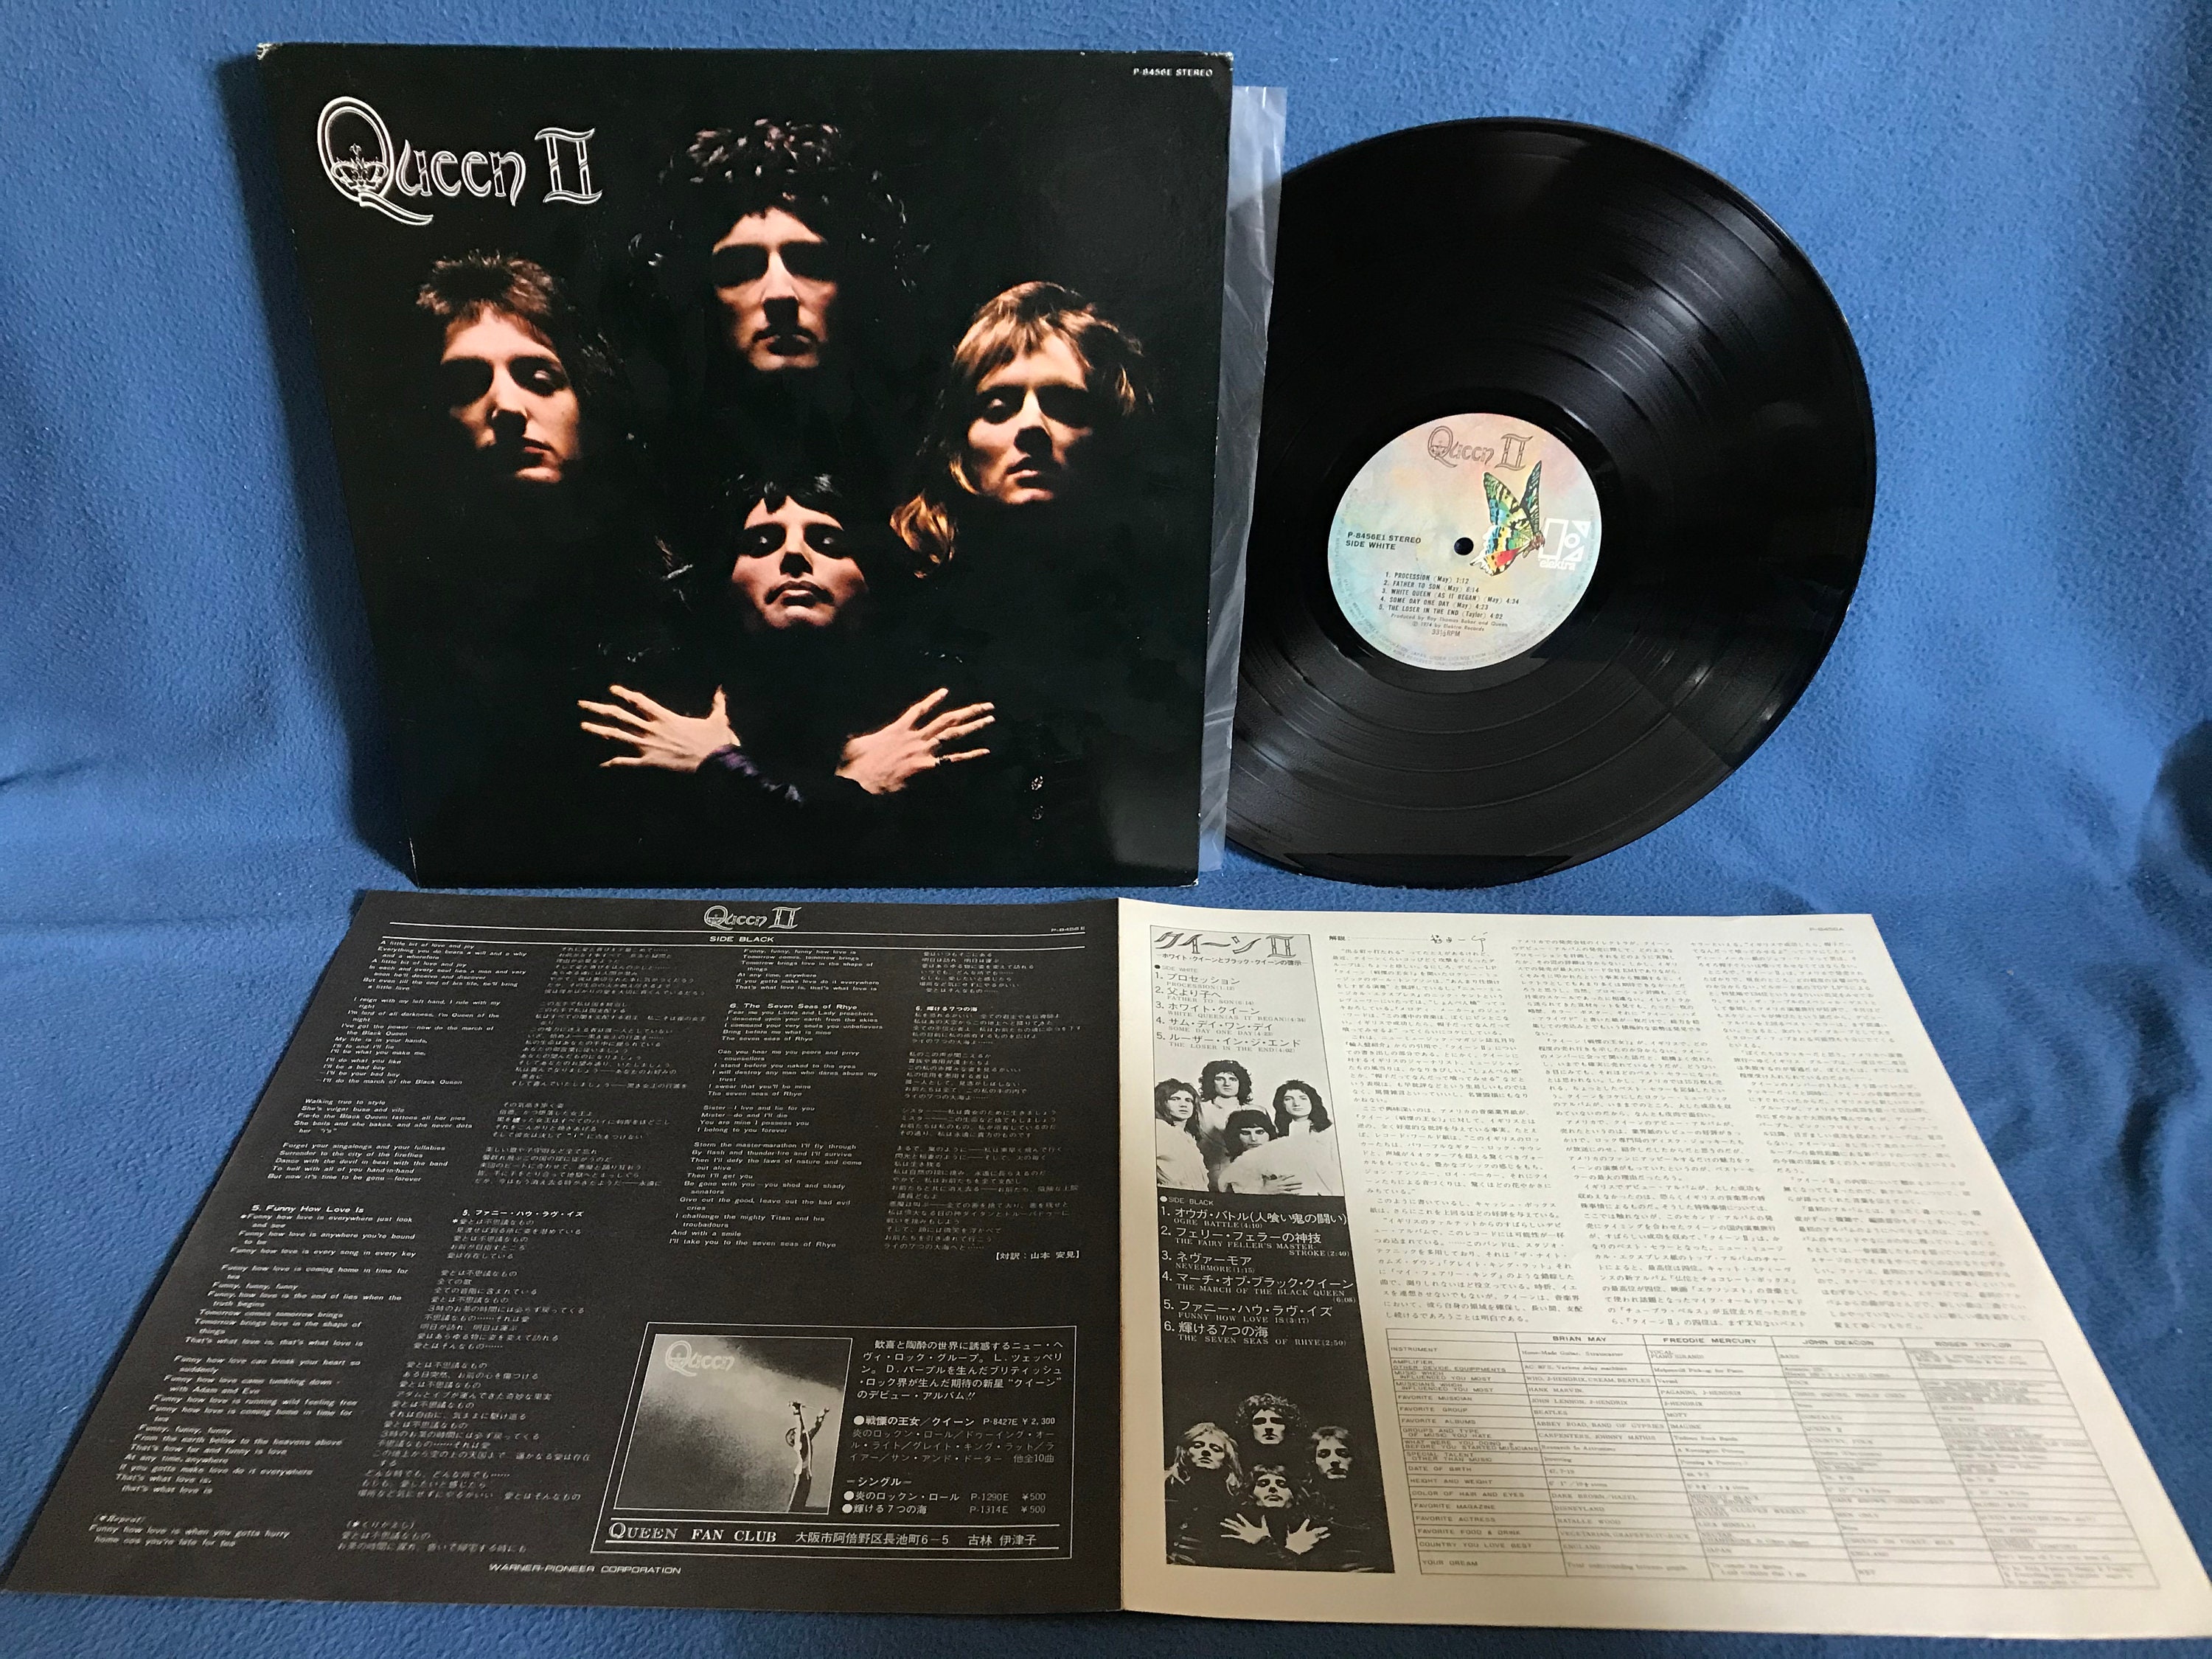 RARE, Vintage, Queen ii Vinyl Lp Record Album, Original First